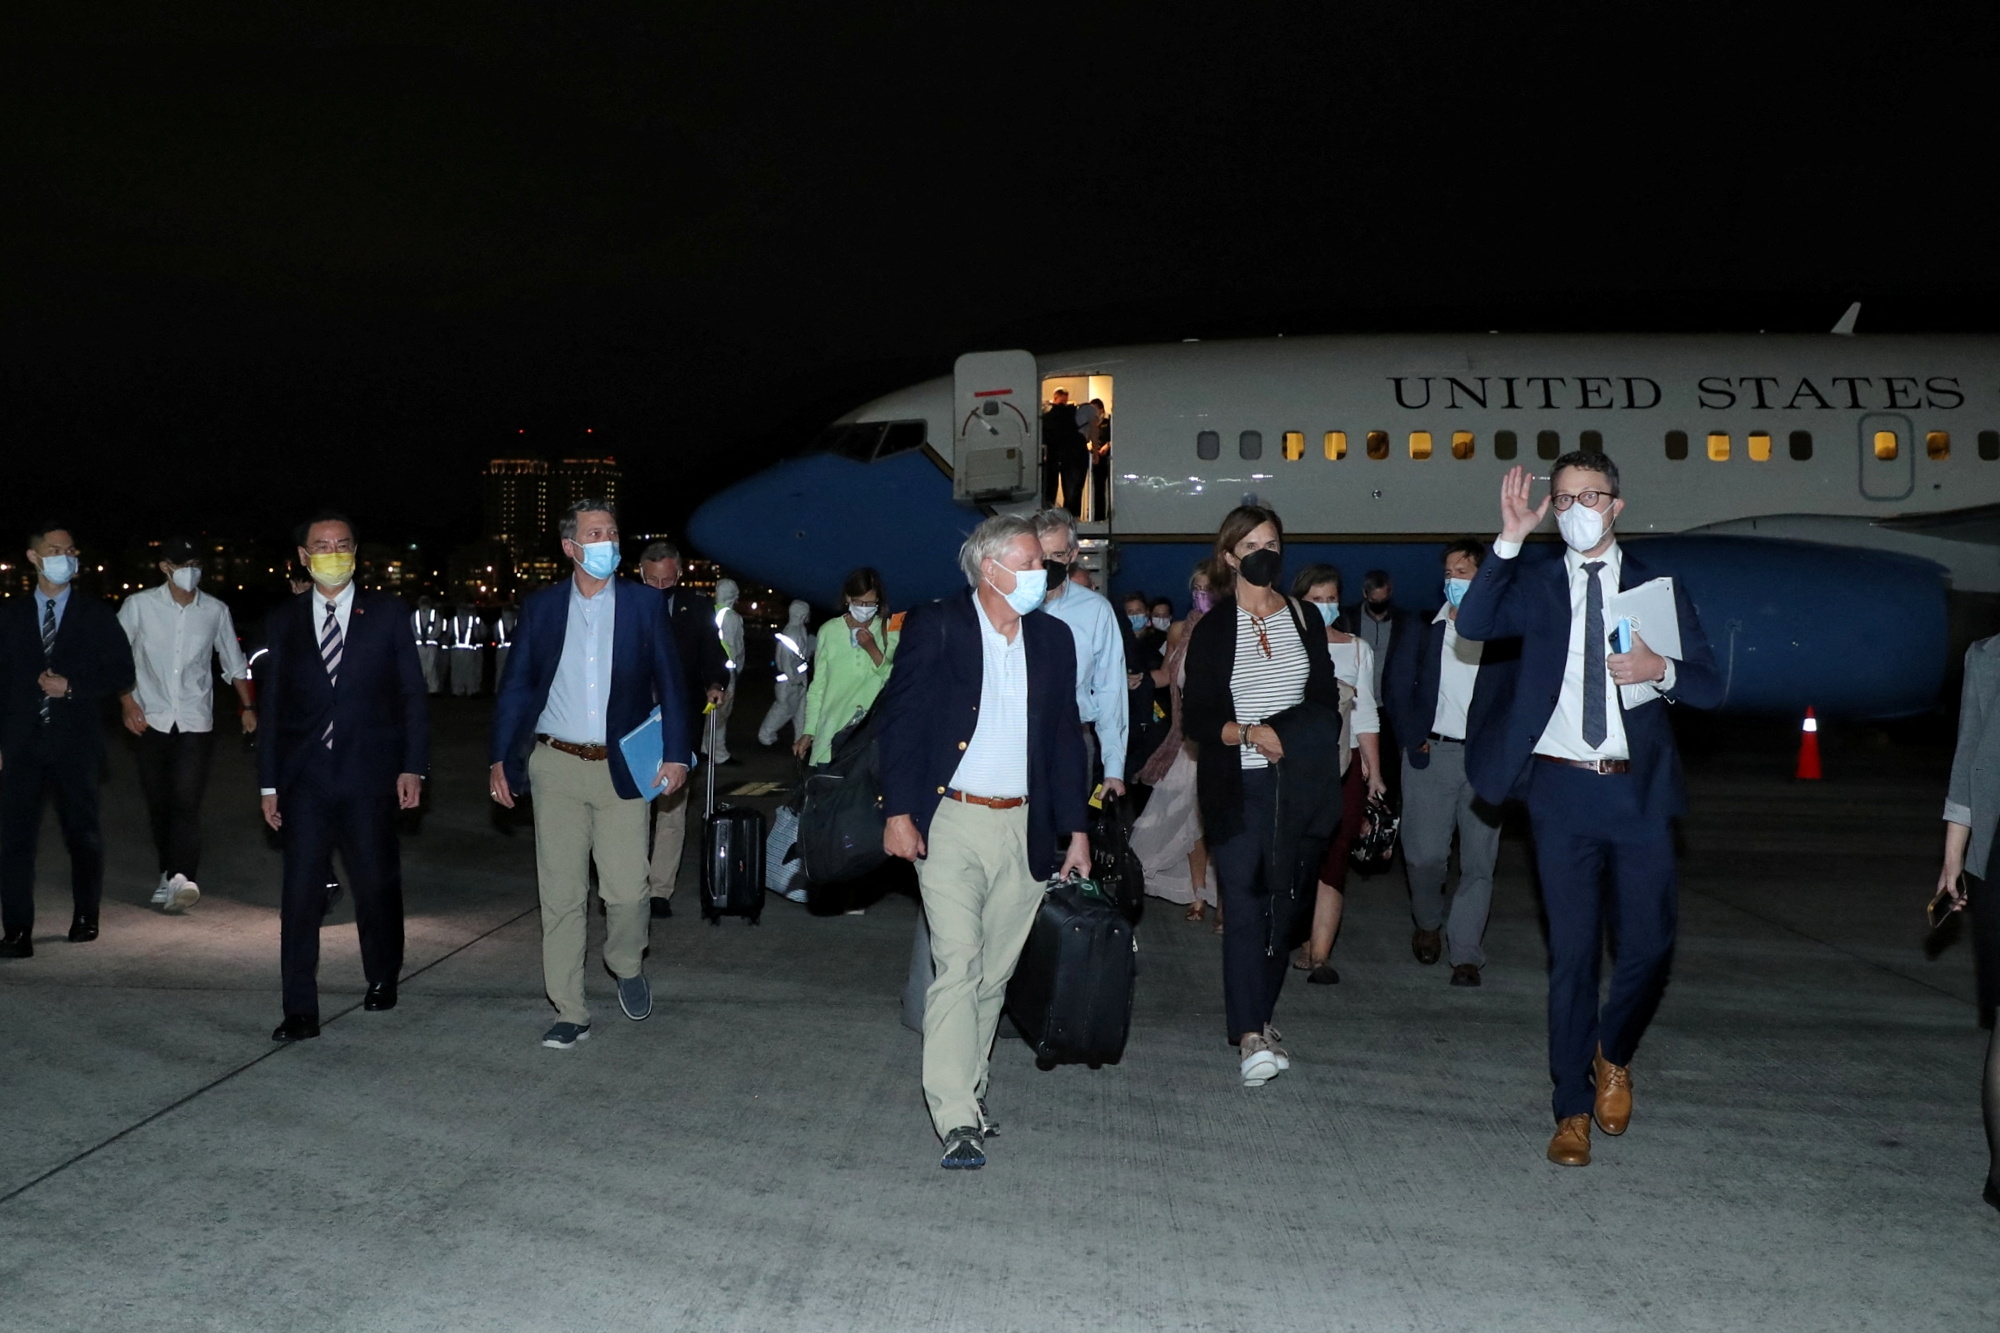 Members of U.S. delegation arrive in Taipei